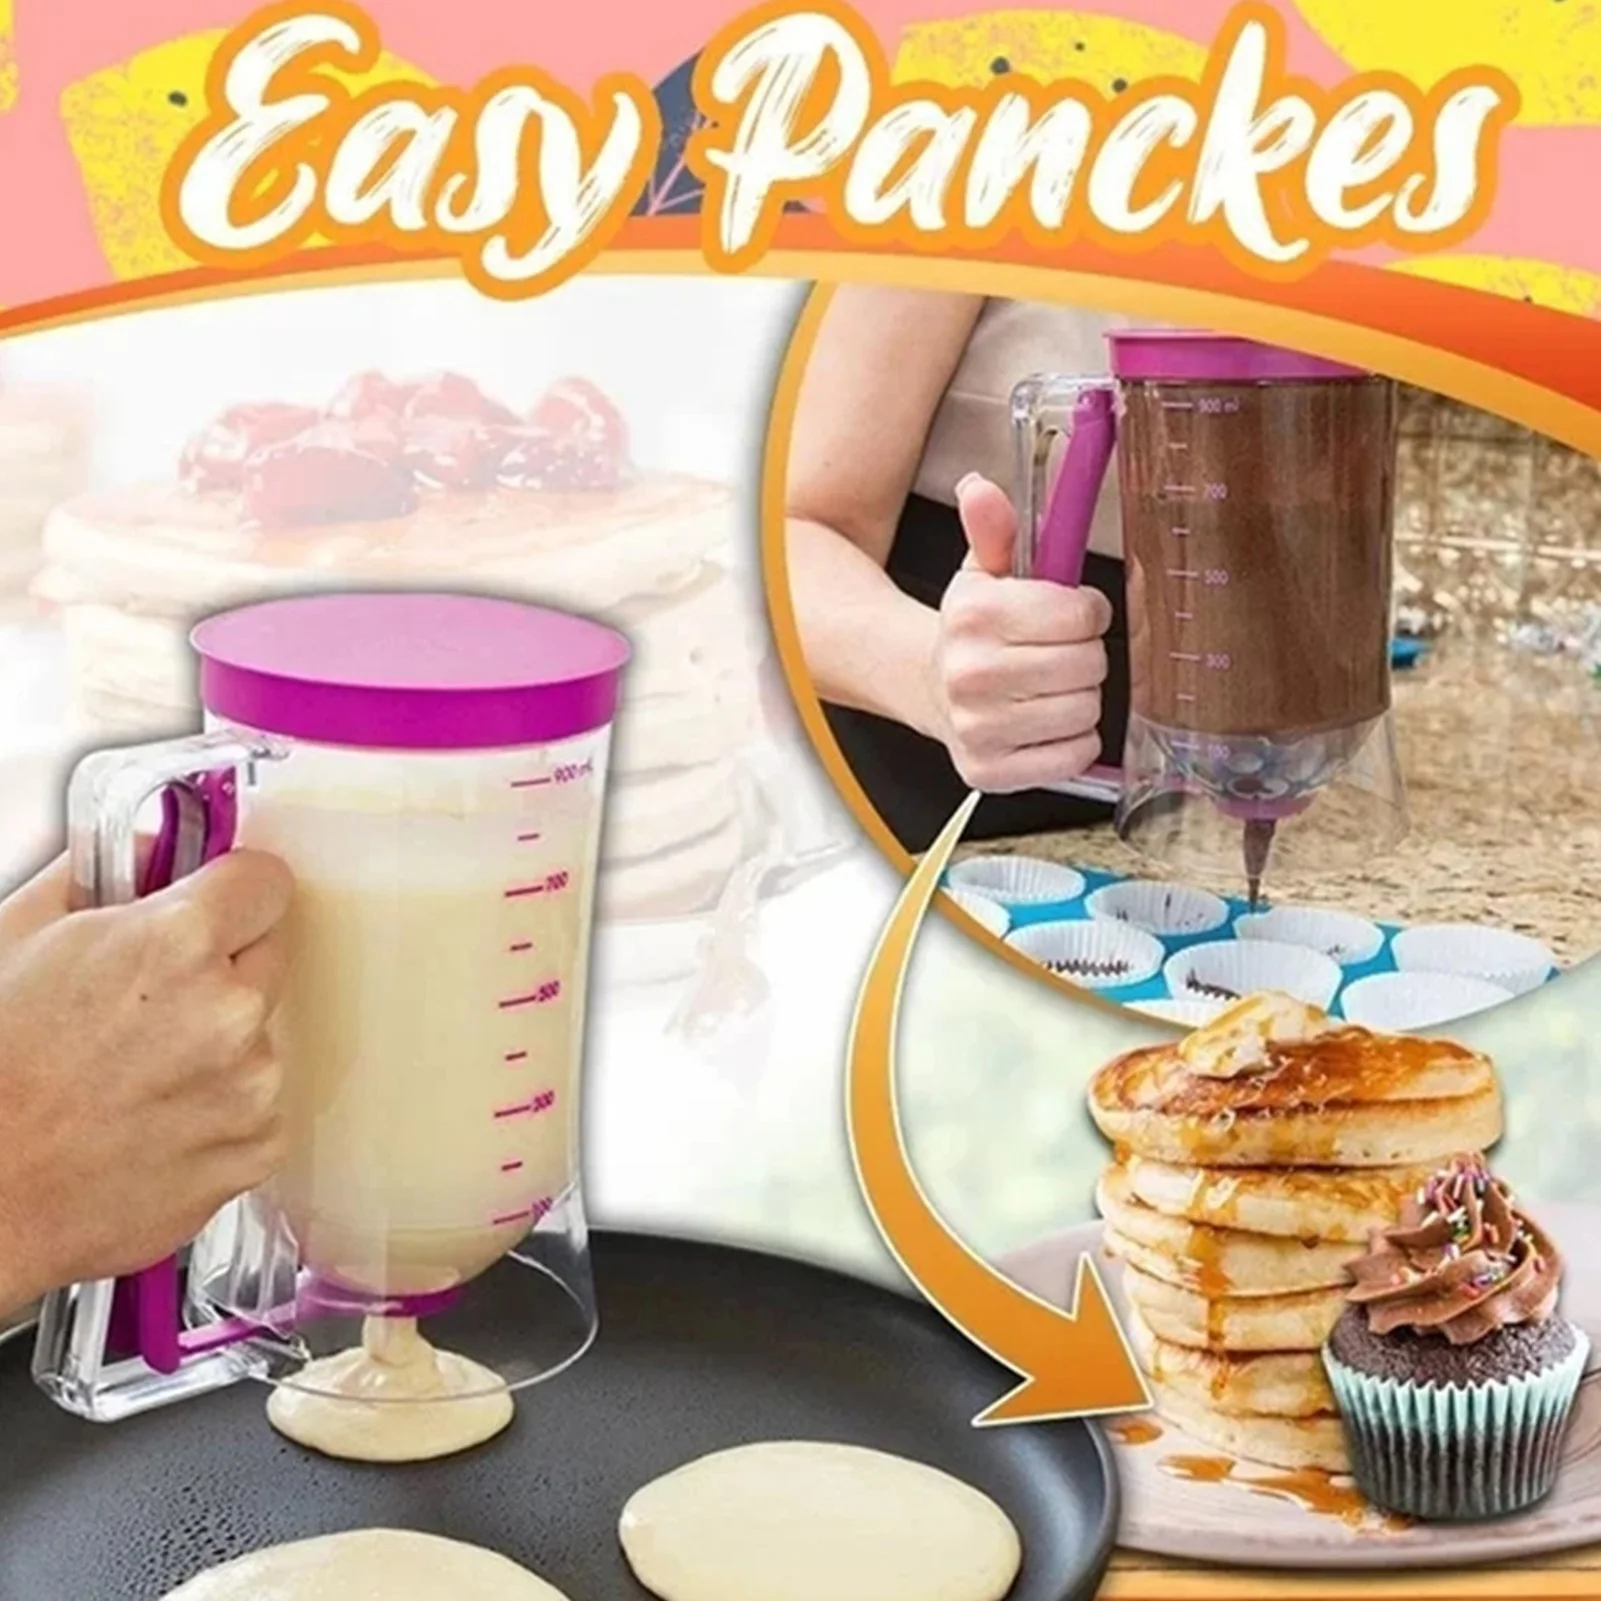 900ML Cupcakes Pancakes Cookie Cake Muffins Baking Waffles Batter